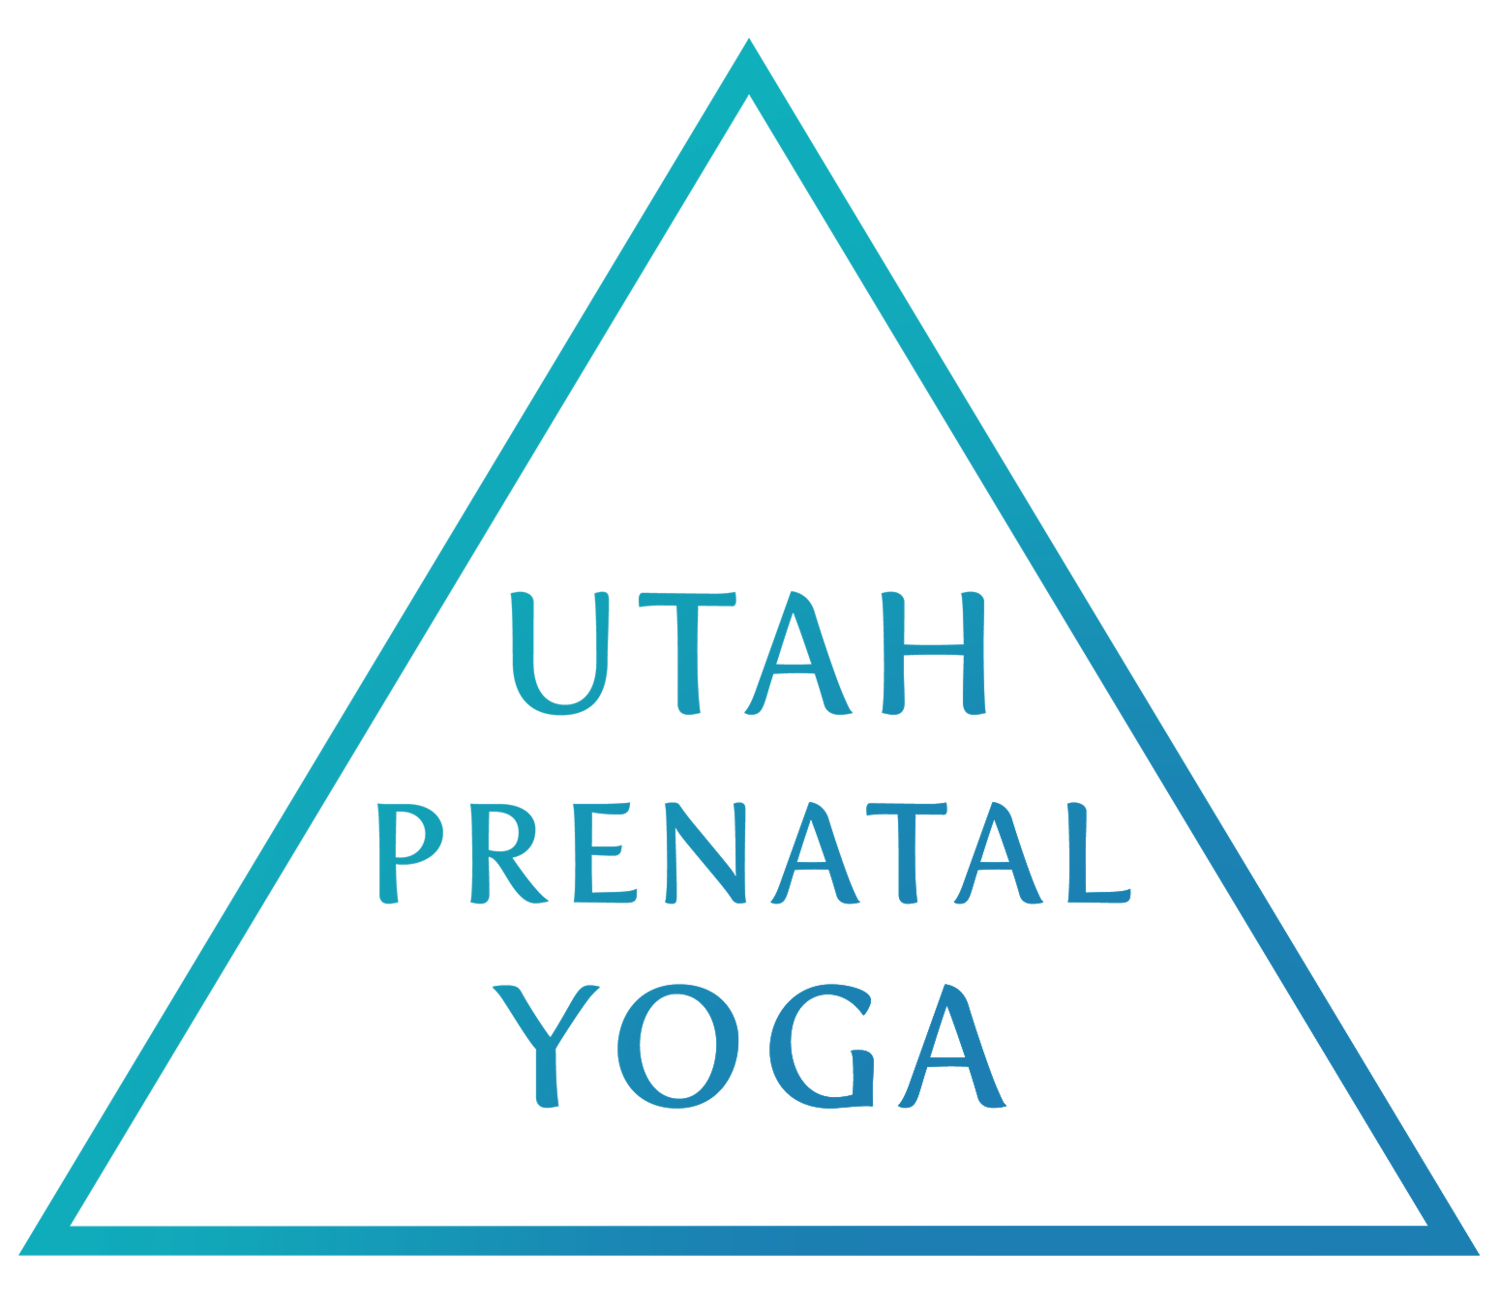 Utah Prenatal Yoga